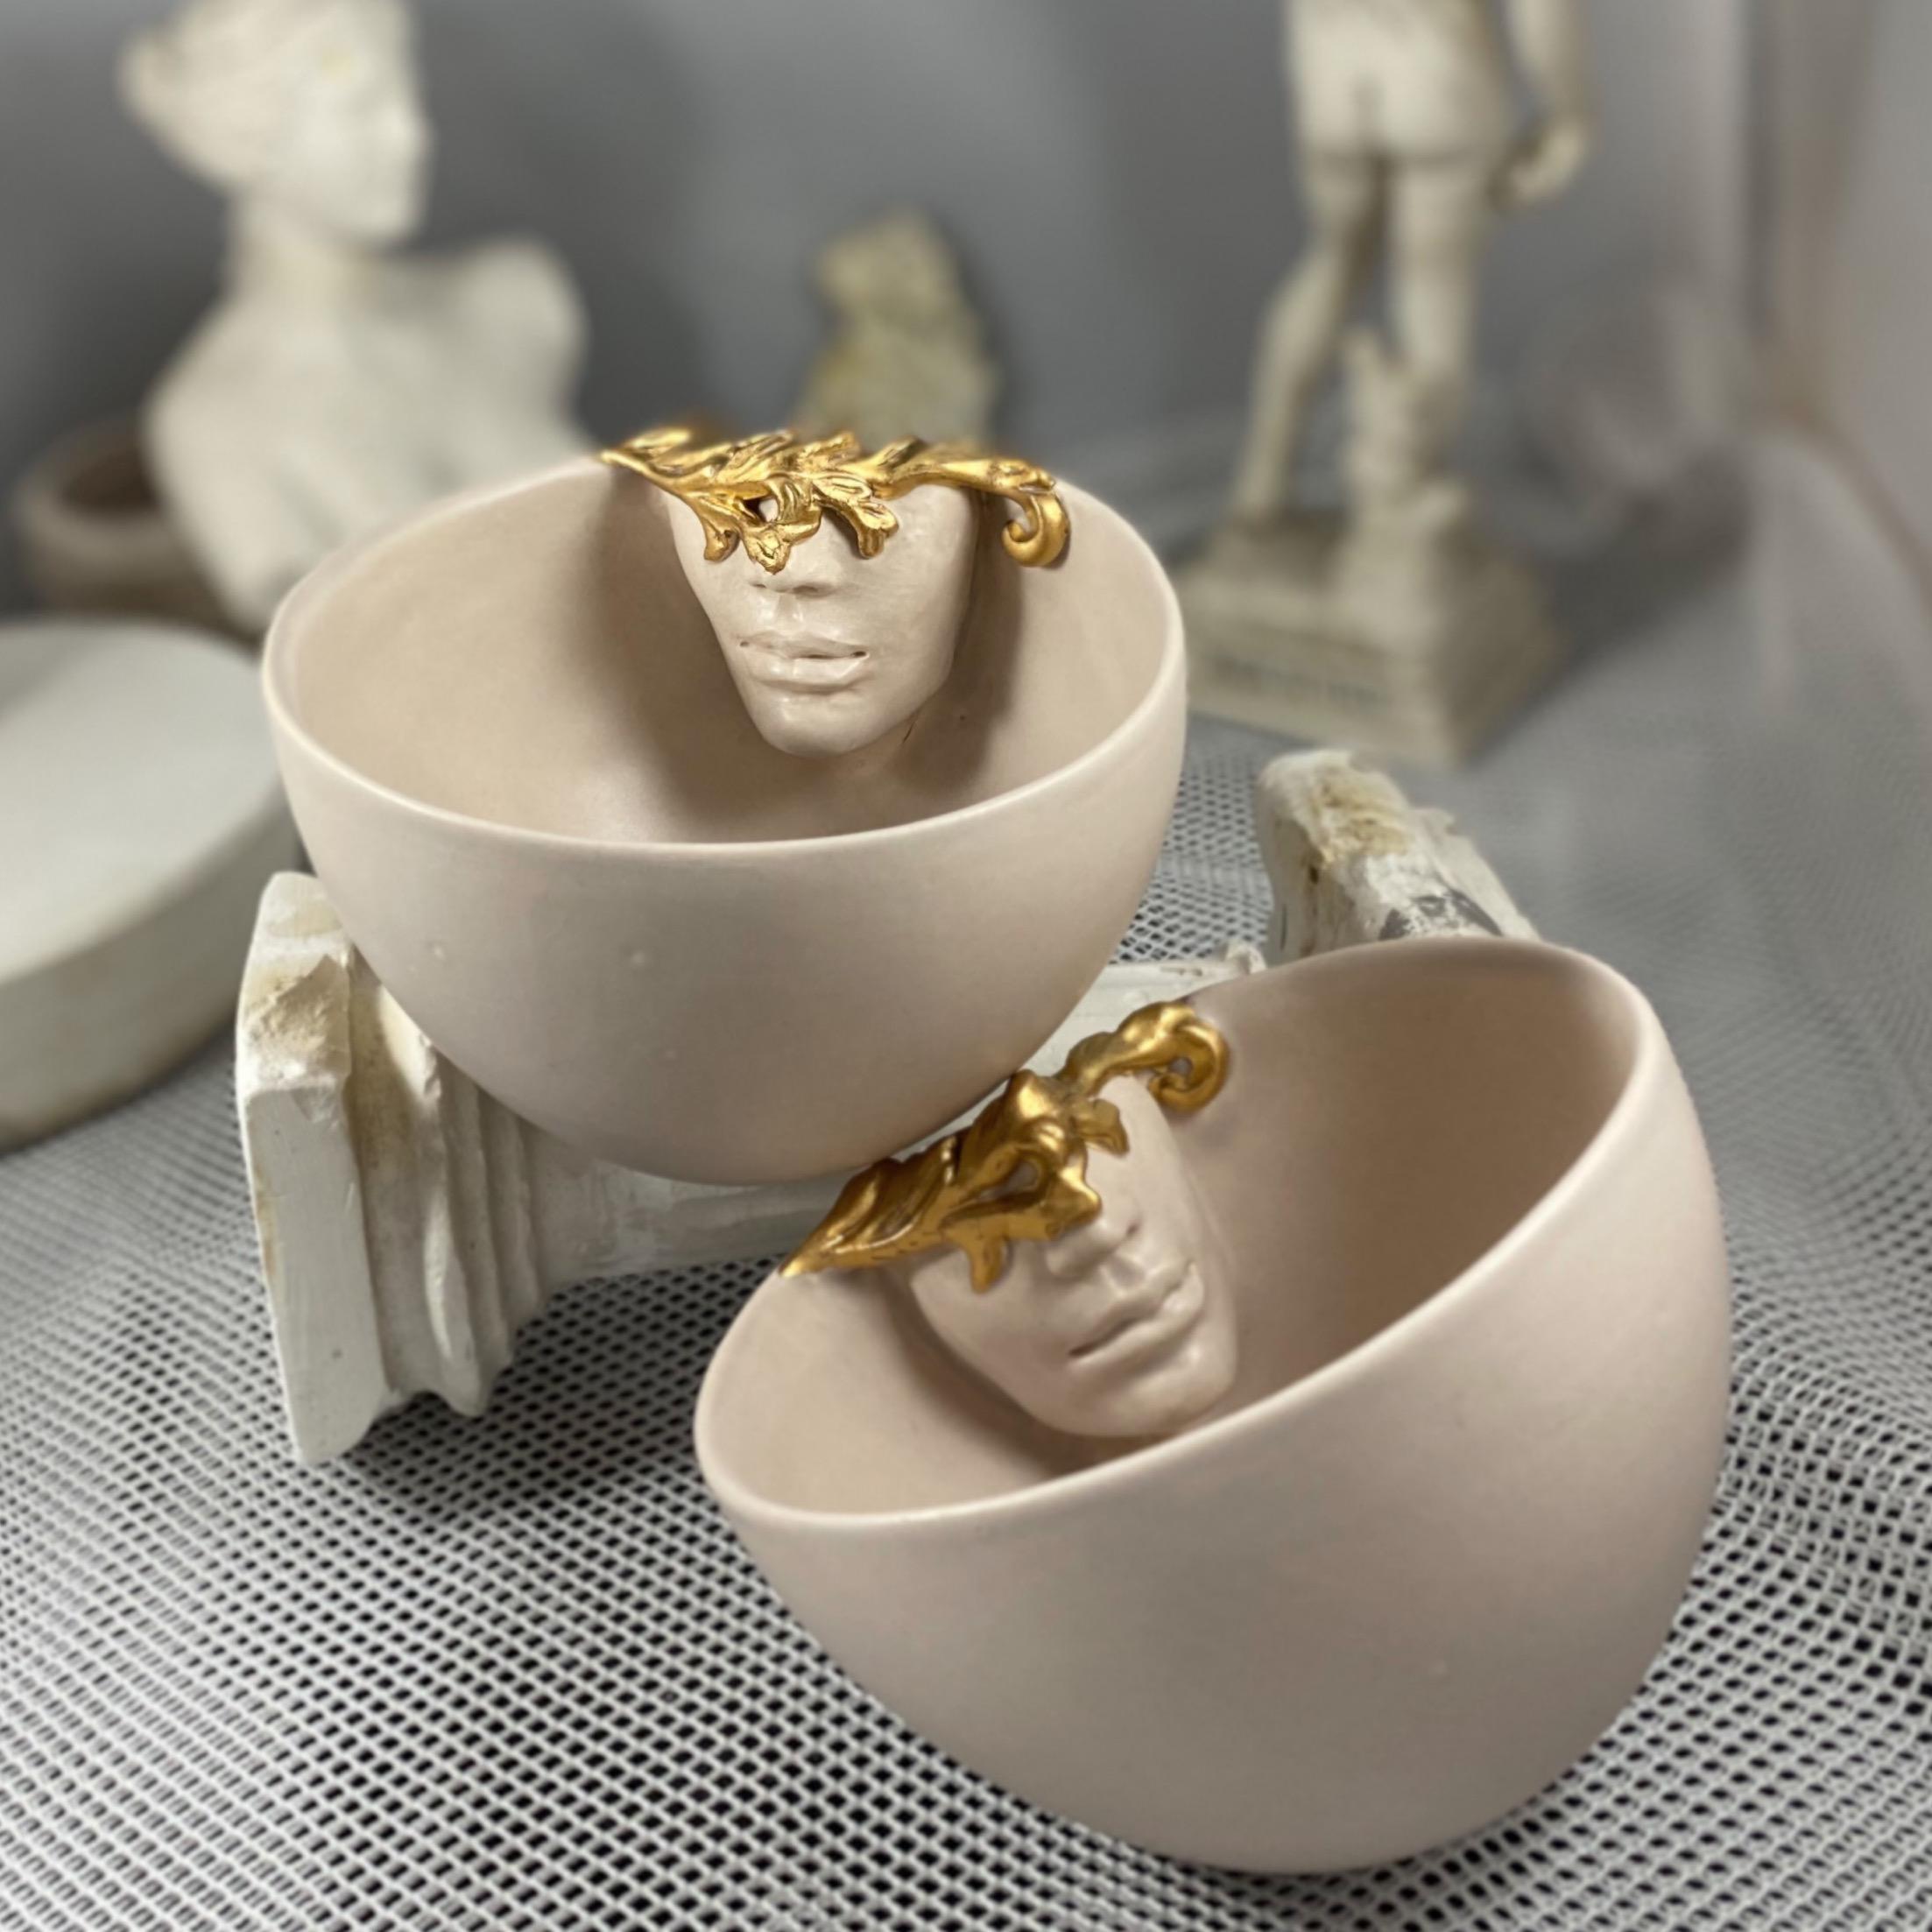 Un ensemble de 2 tasses en céramique fabriquées à la main par l'artiste céramiste Hulya Sozer. 
Or 12k lustré. Glaçage alimentaire. Matériaux non toxiques et sans plomb. 
Il peut être lavé au lave-vaisselle, mais il est recommandé de le laver à la